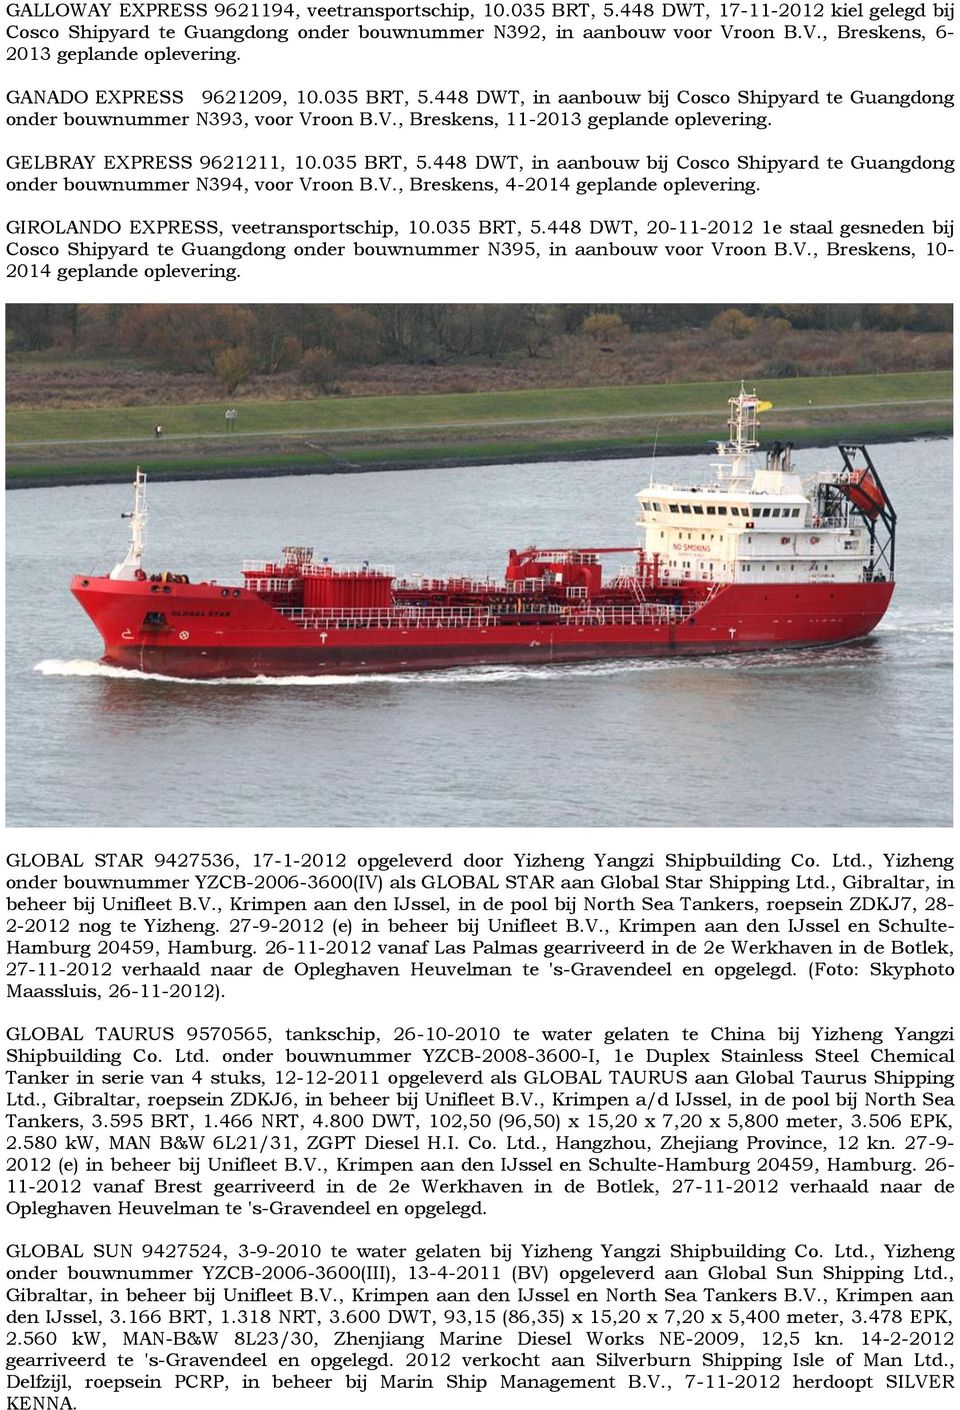 GELBRAY EXPRESS 9621211, 10.035 BRT, 5.448 DWT, in aanbouw bij Cosco Shipyard te Guangdong onder bouwnummer N394, voor Vroon B.V., Breskens, 4-2014 geplande oplevering.